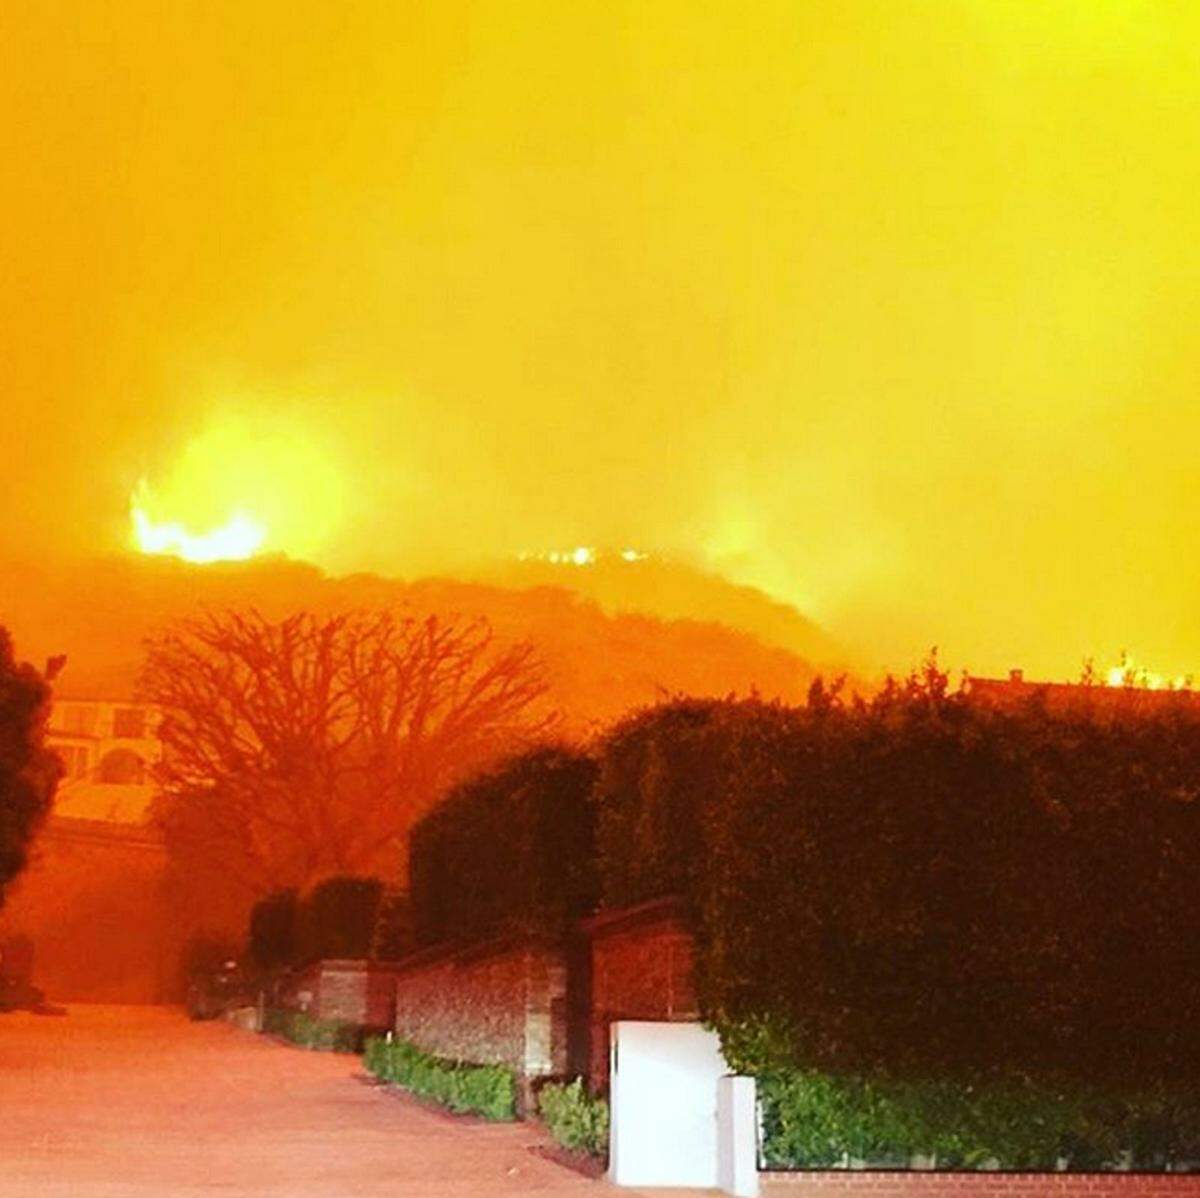 Auch Orlando Bloom ist von den Waldbränden in Kalifornien betroffen, er teilte dieses Bild: "Das ist meine Straße vor zwei Stunden. Ich bete für die Sicherheit meiner ganzen Malibu-Familie und bin dankbar für unsere tapferen Feuerwehrleute. Bitte bleibt in Sicherheit."